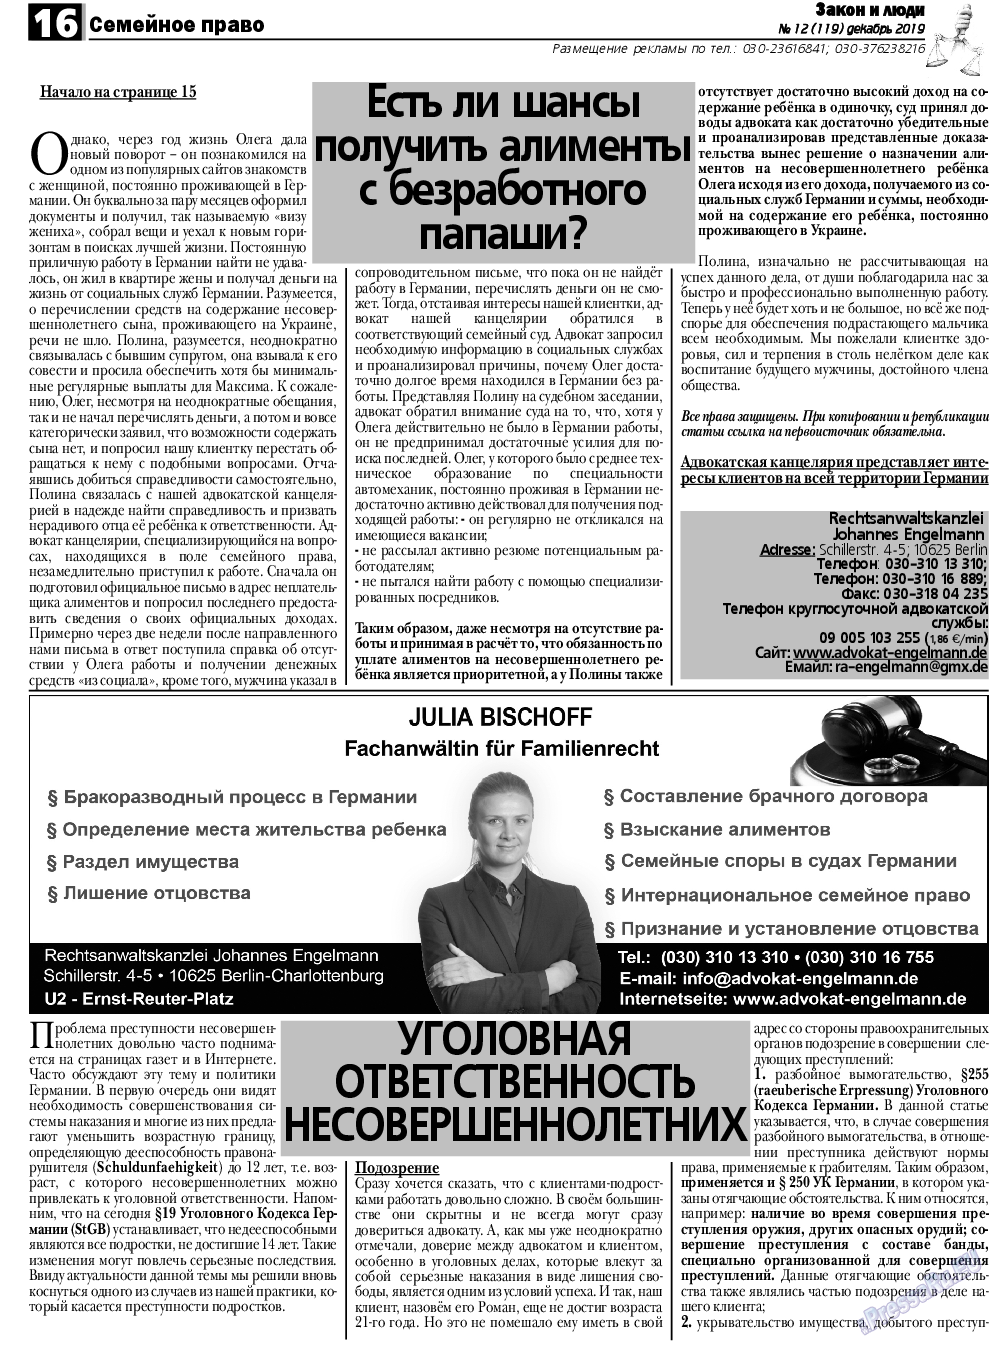 Закон и люди, газета. 2019 №12 стр.16